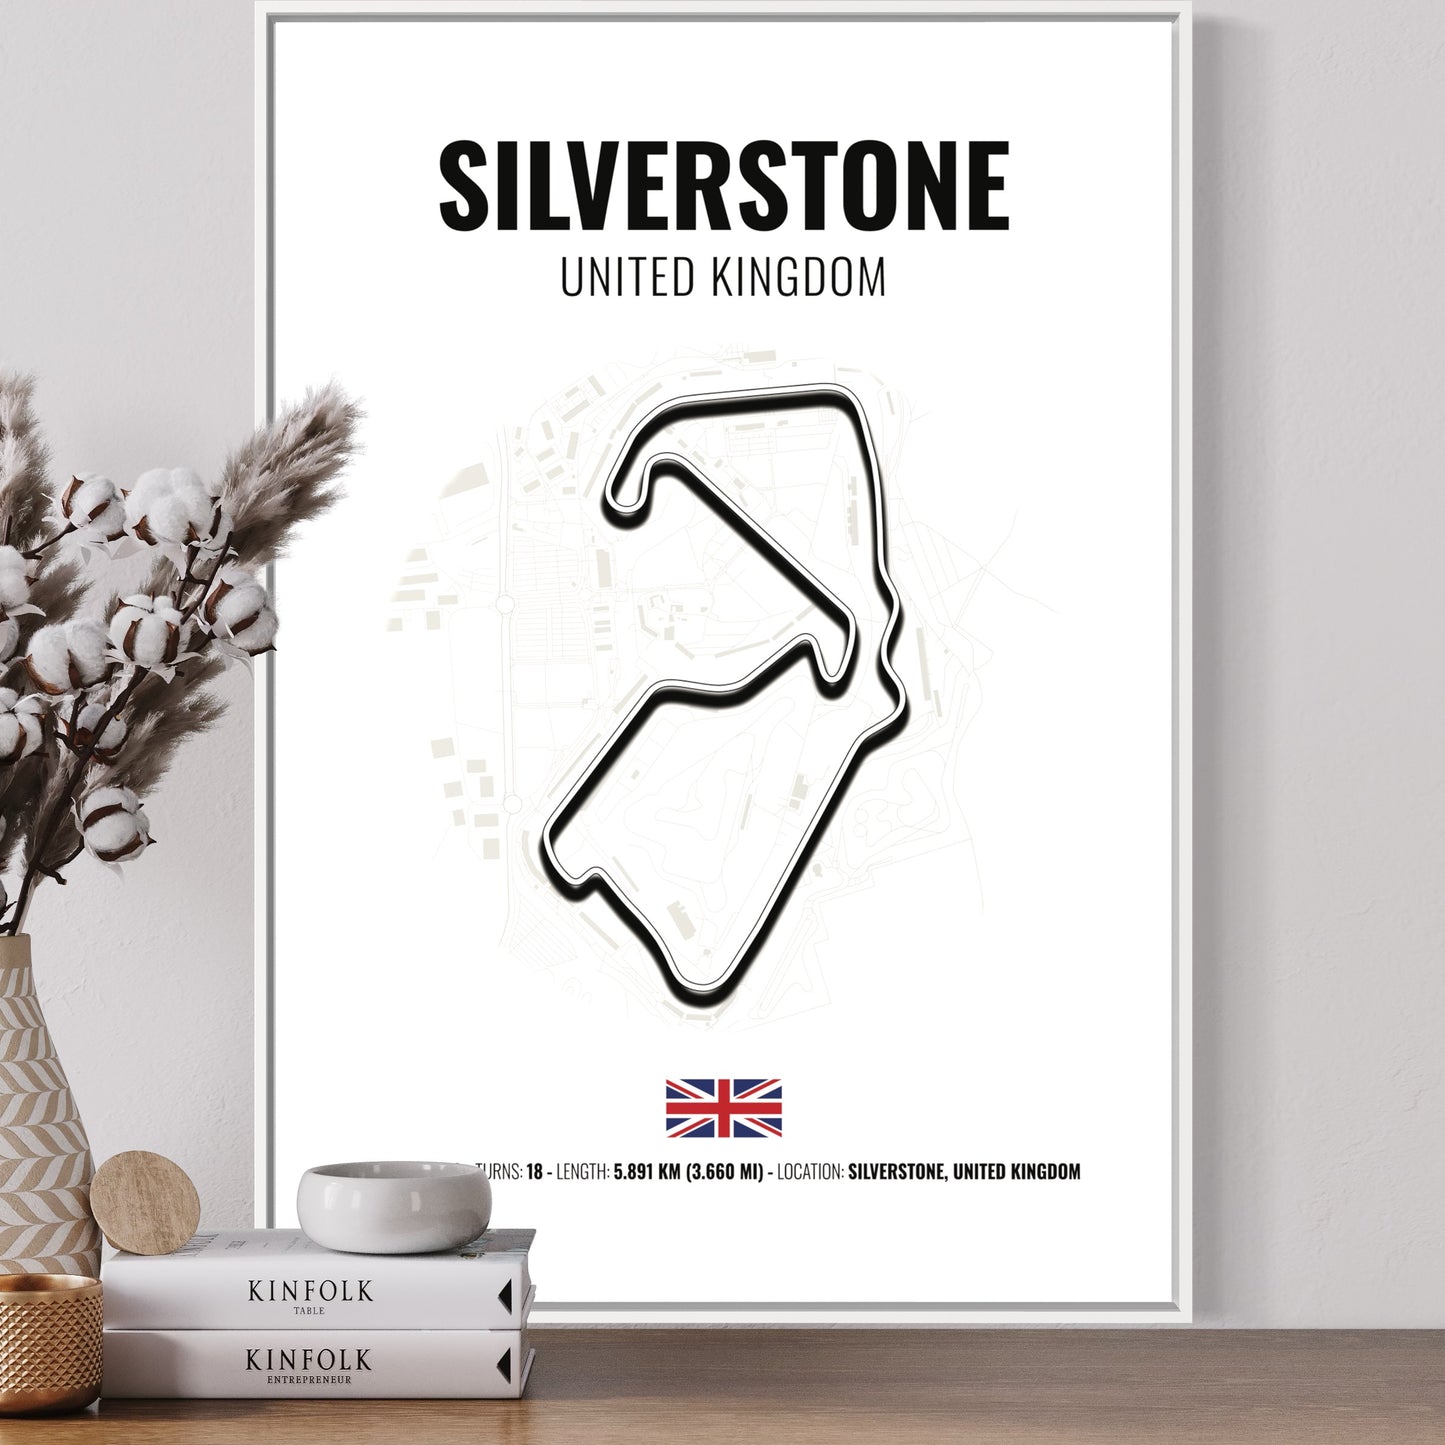 Silverstone F1 Grand Prix Poster | Silverstone F1 Grand Prix Print | Silverstone F1 Grand Prix Wall Art - White